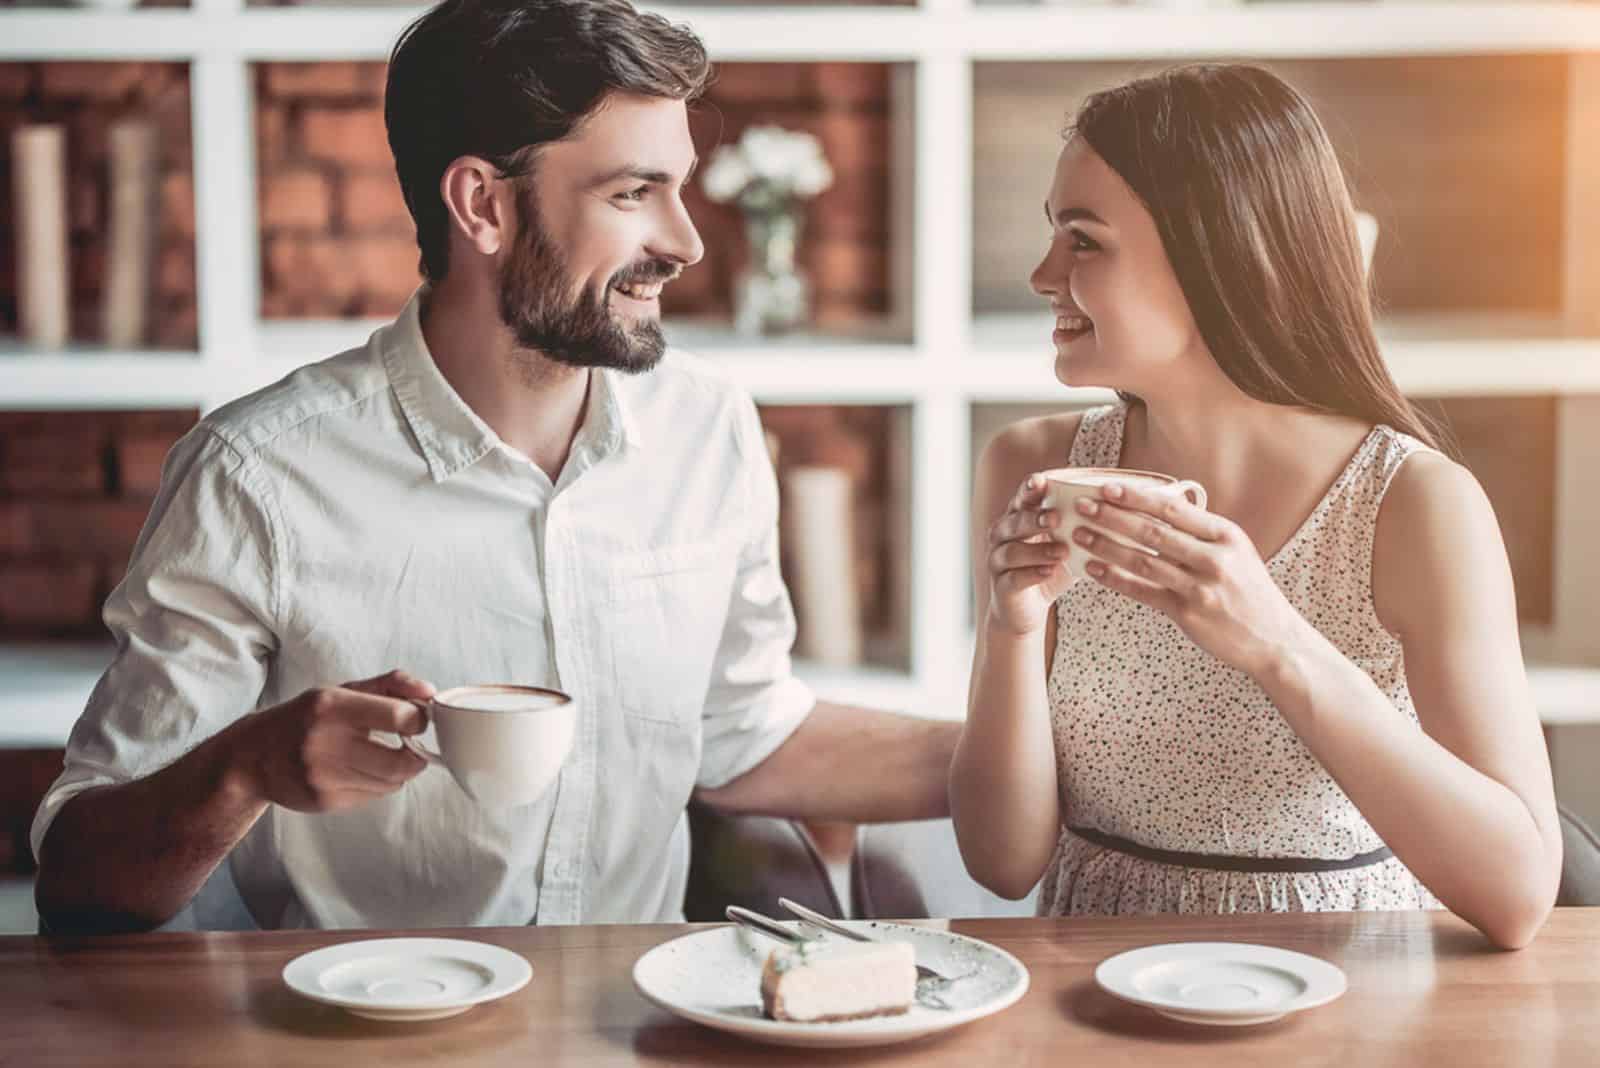 Ein schönes Mädchen mit langen braunen Haaren sitzt neben einem Mann und sie trinken Kaffee